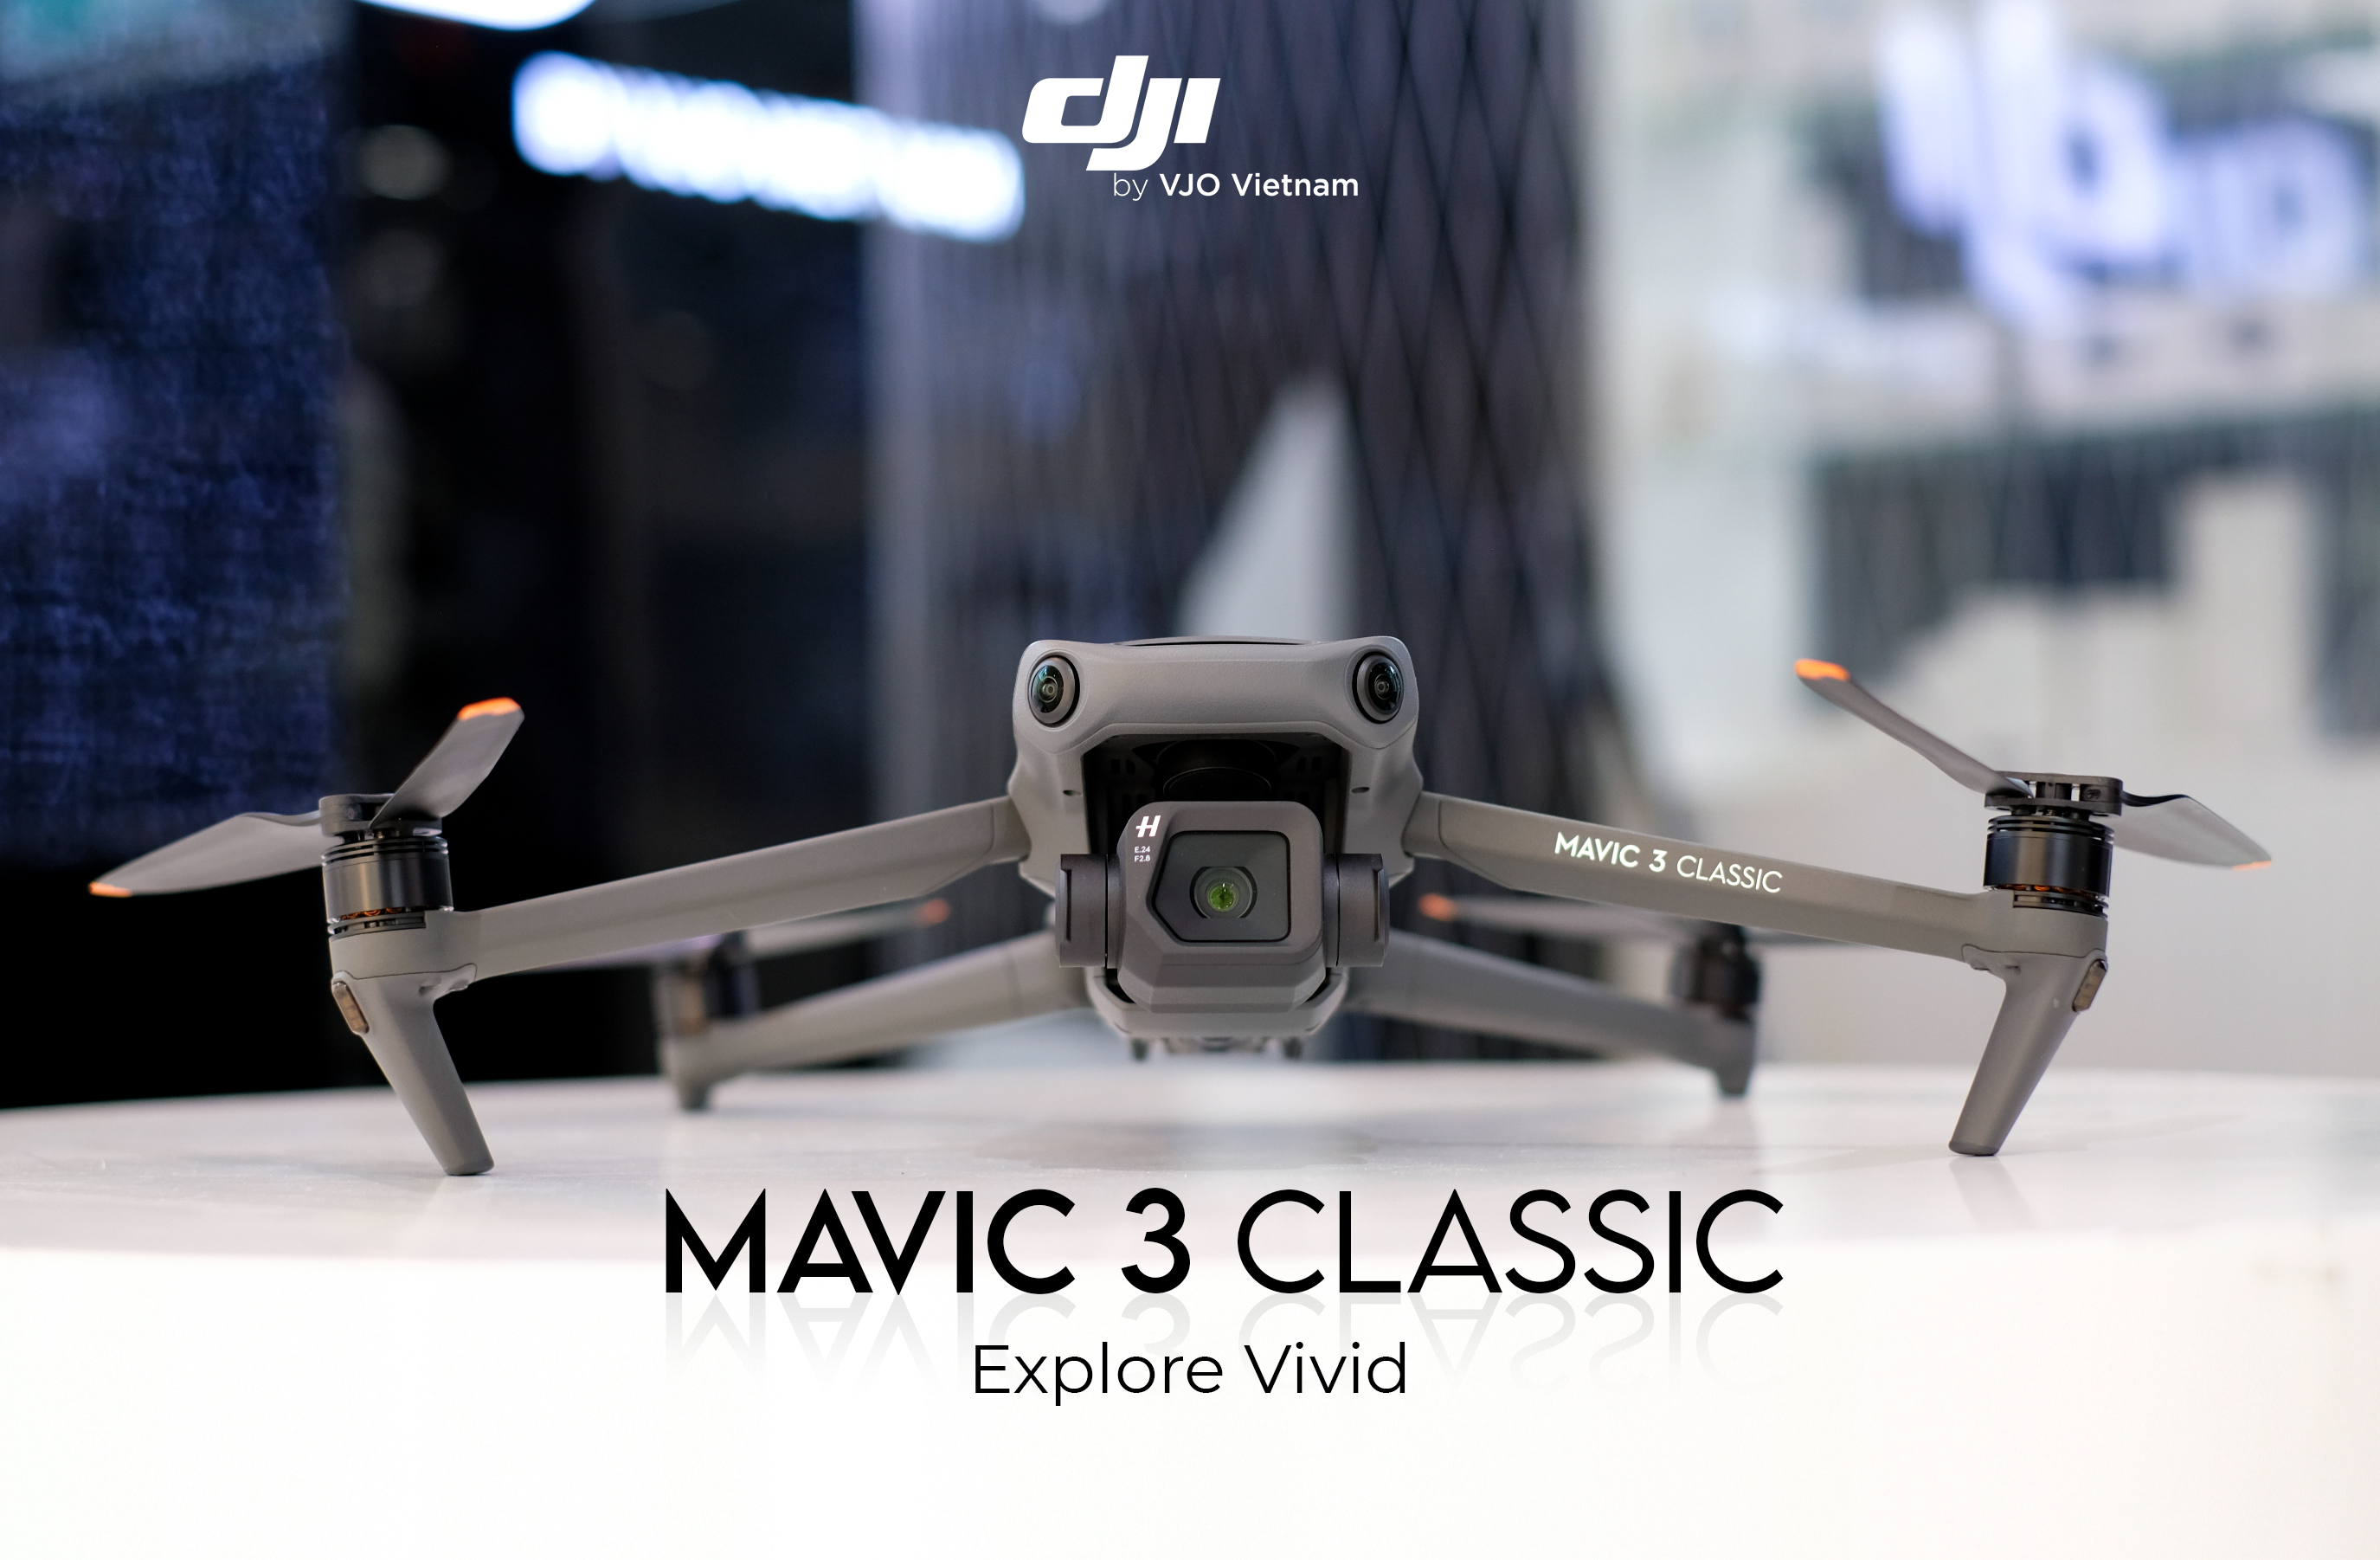 flycam DJI Mavic 3 Classic chính hãng tại DJI Việt Nam